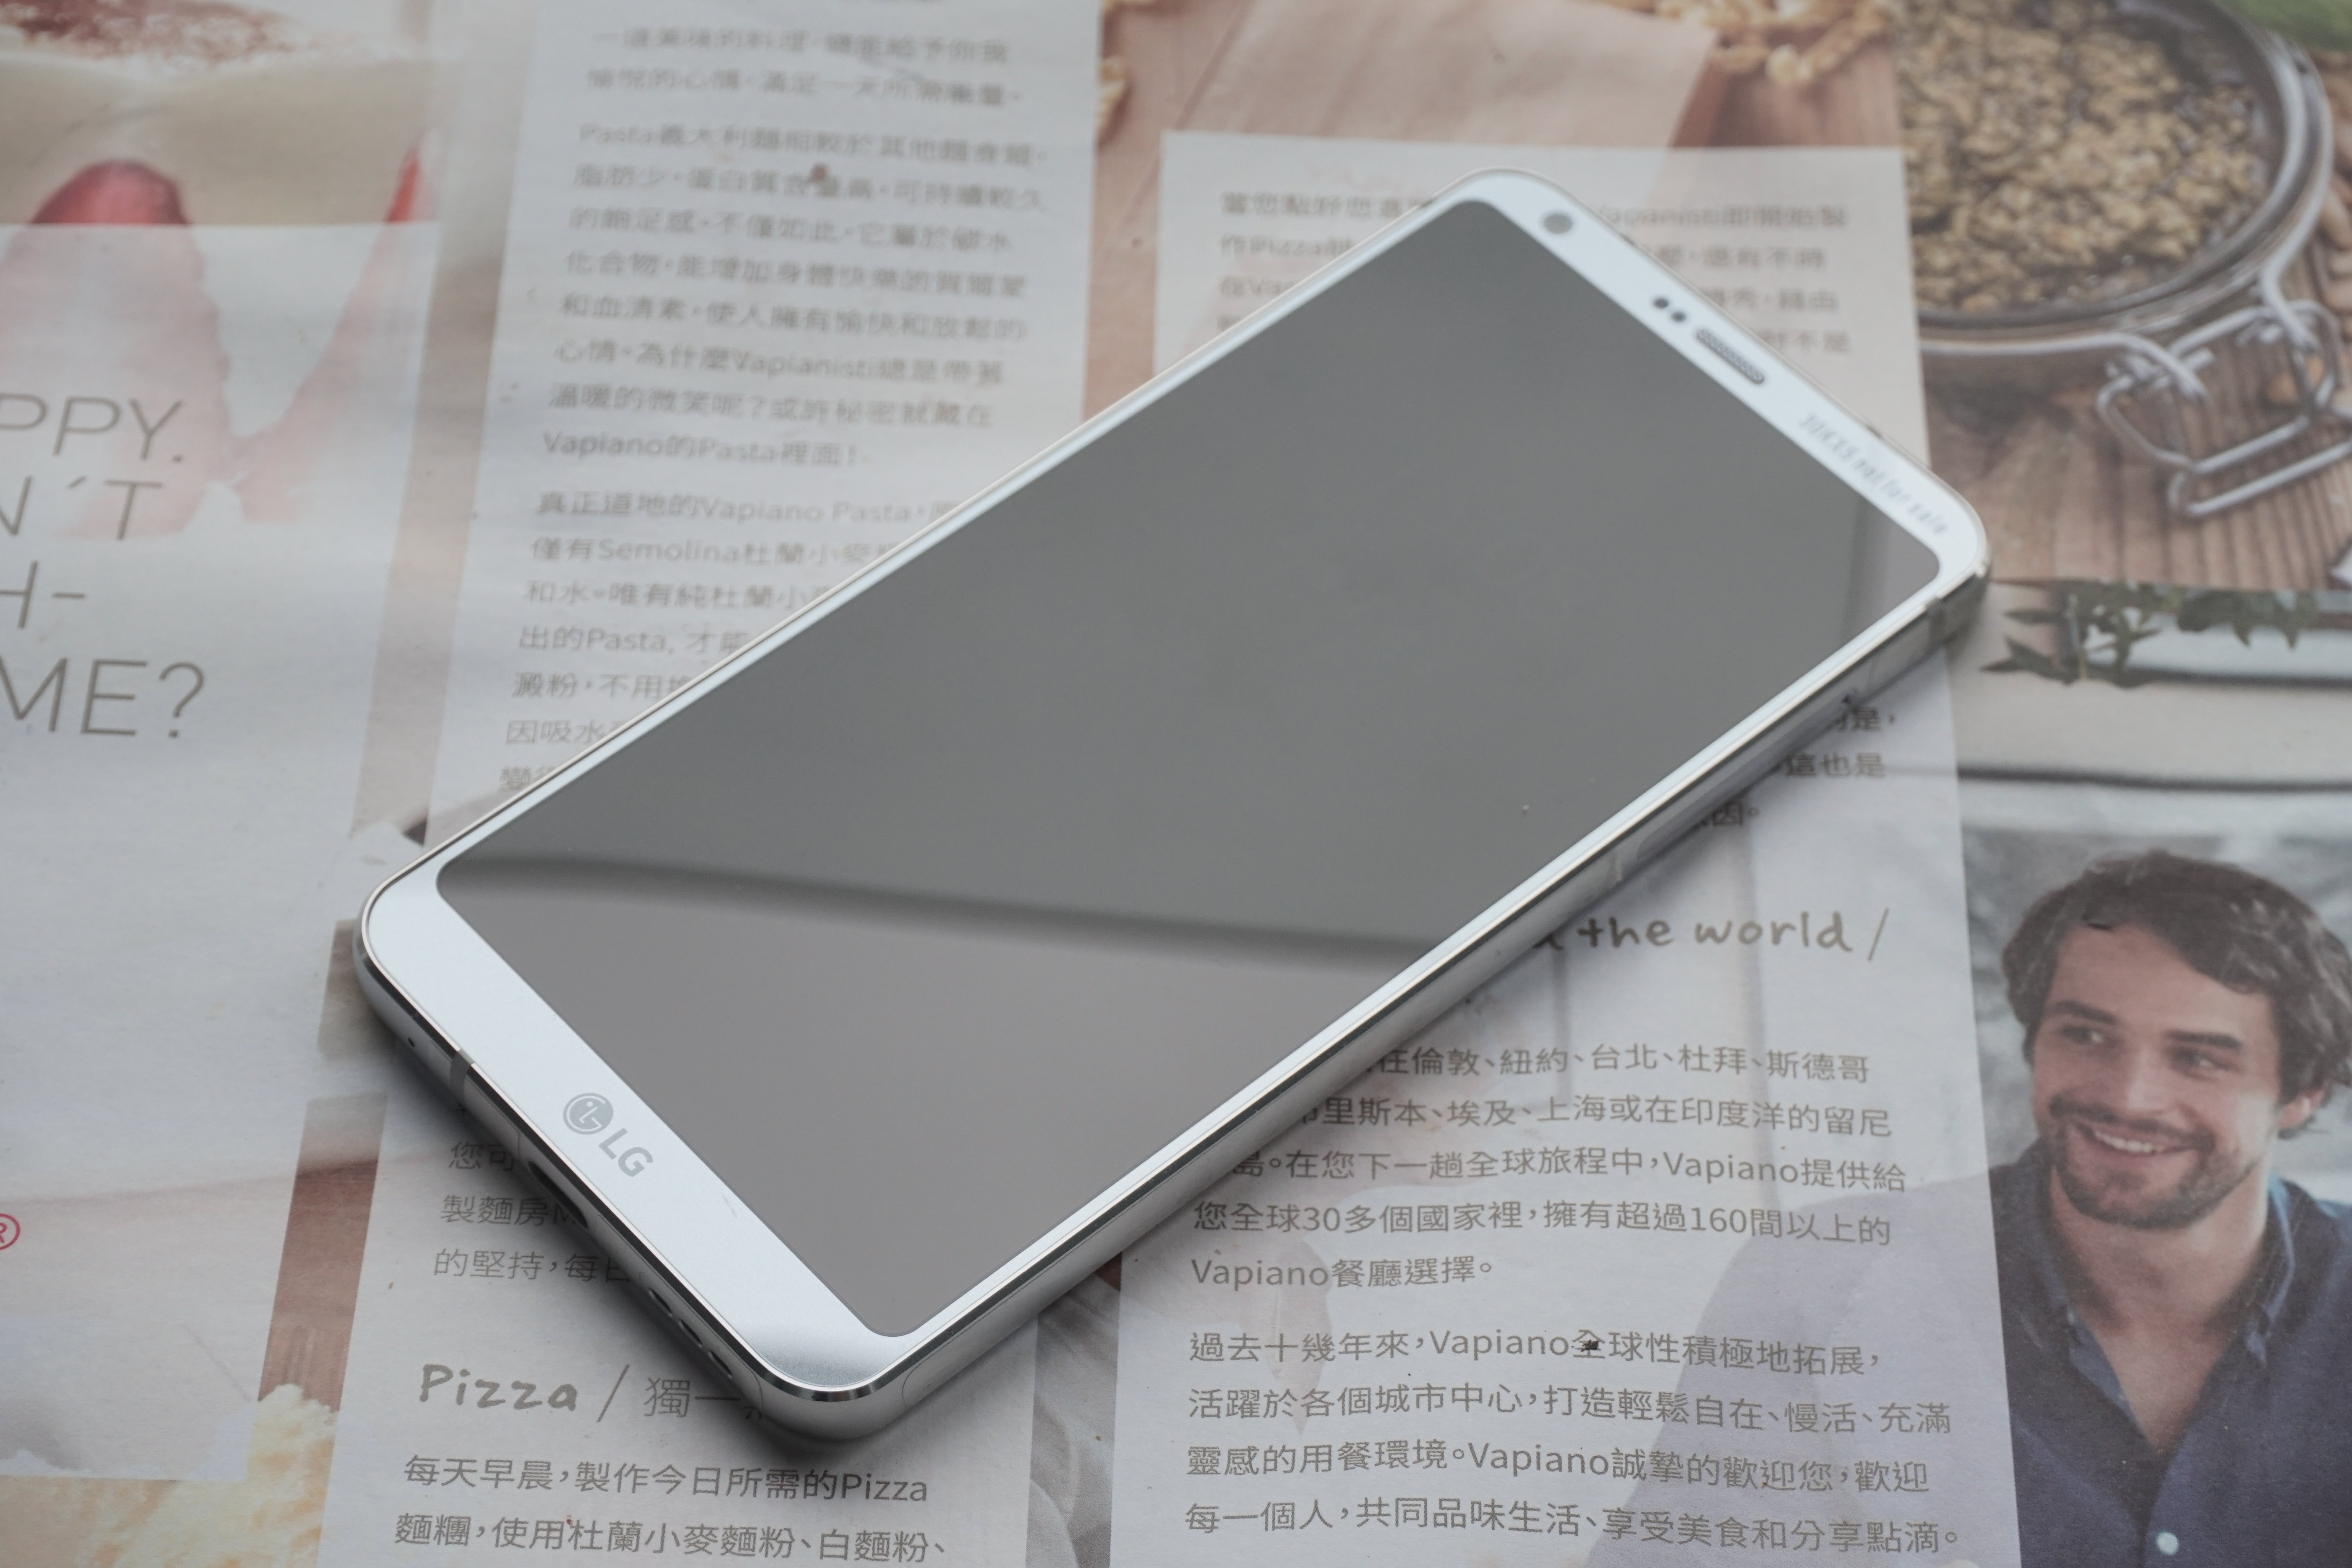 [NEWS] LG G6 18：9 超獨特螢幕比例， 125 度超廣角雙鏡頭更實用